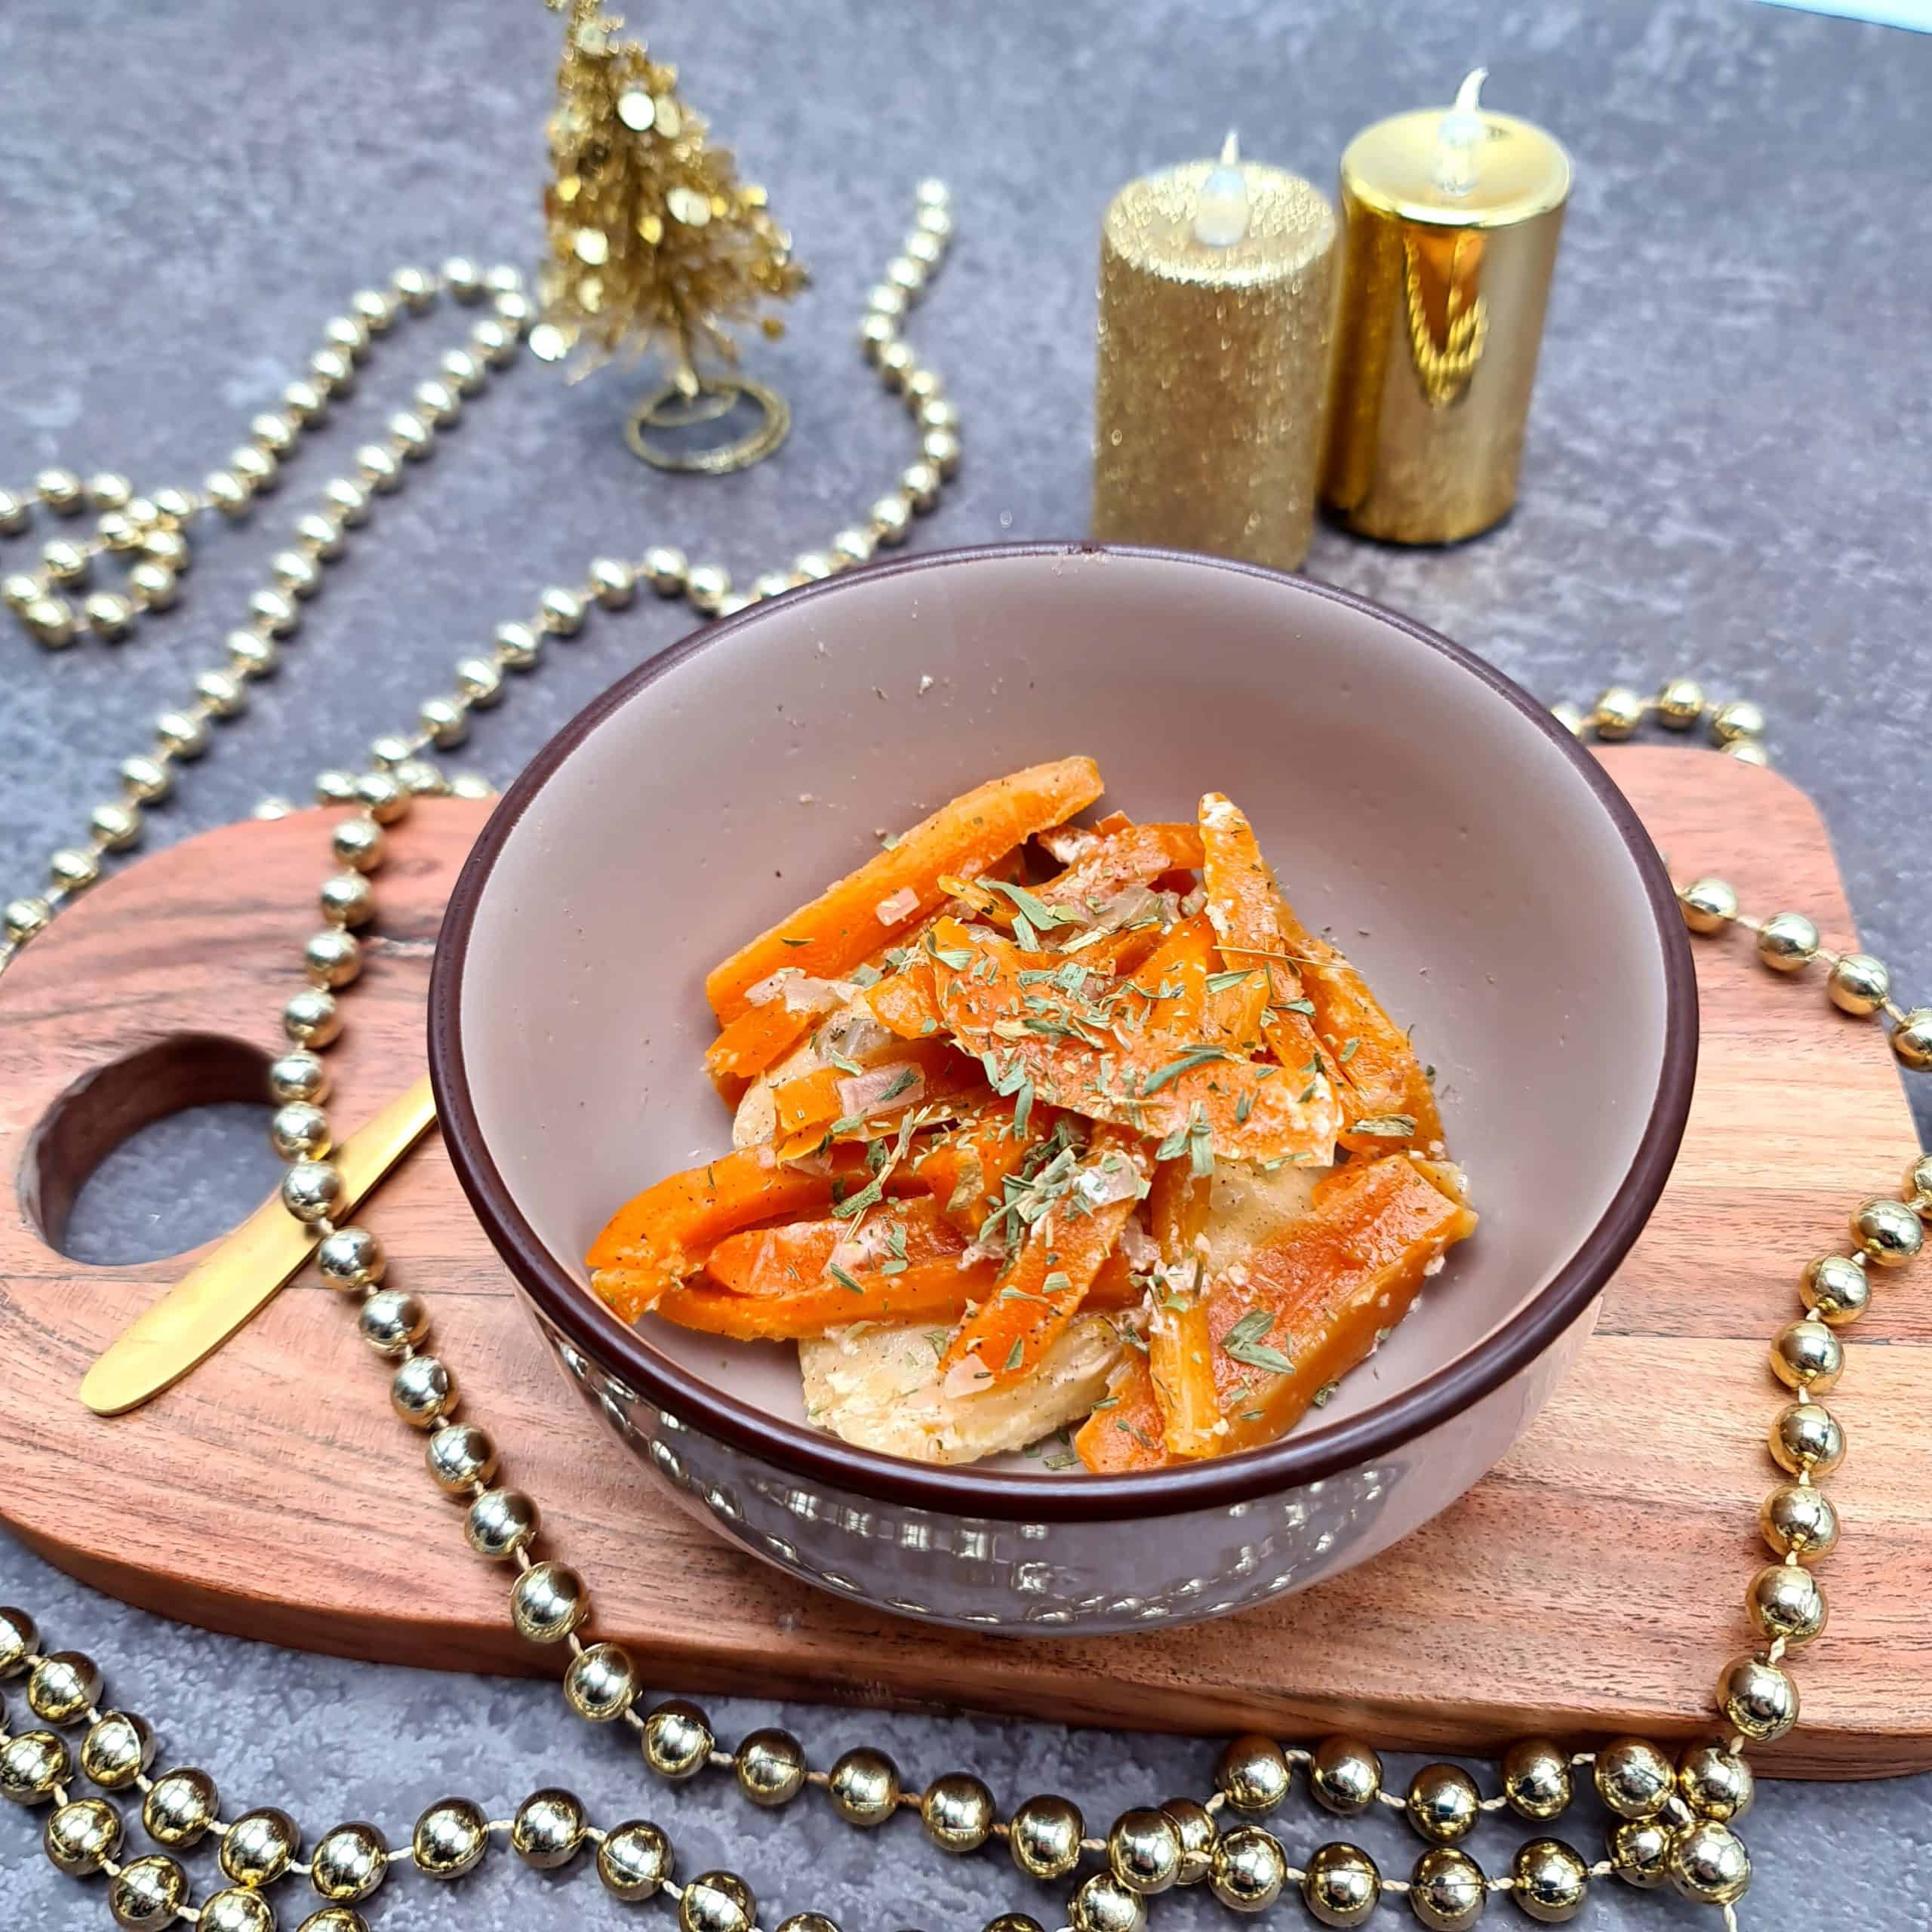 Une recette pour un repas de fête en DME : la papillote de cabillaud et carottes confites.